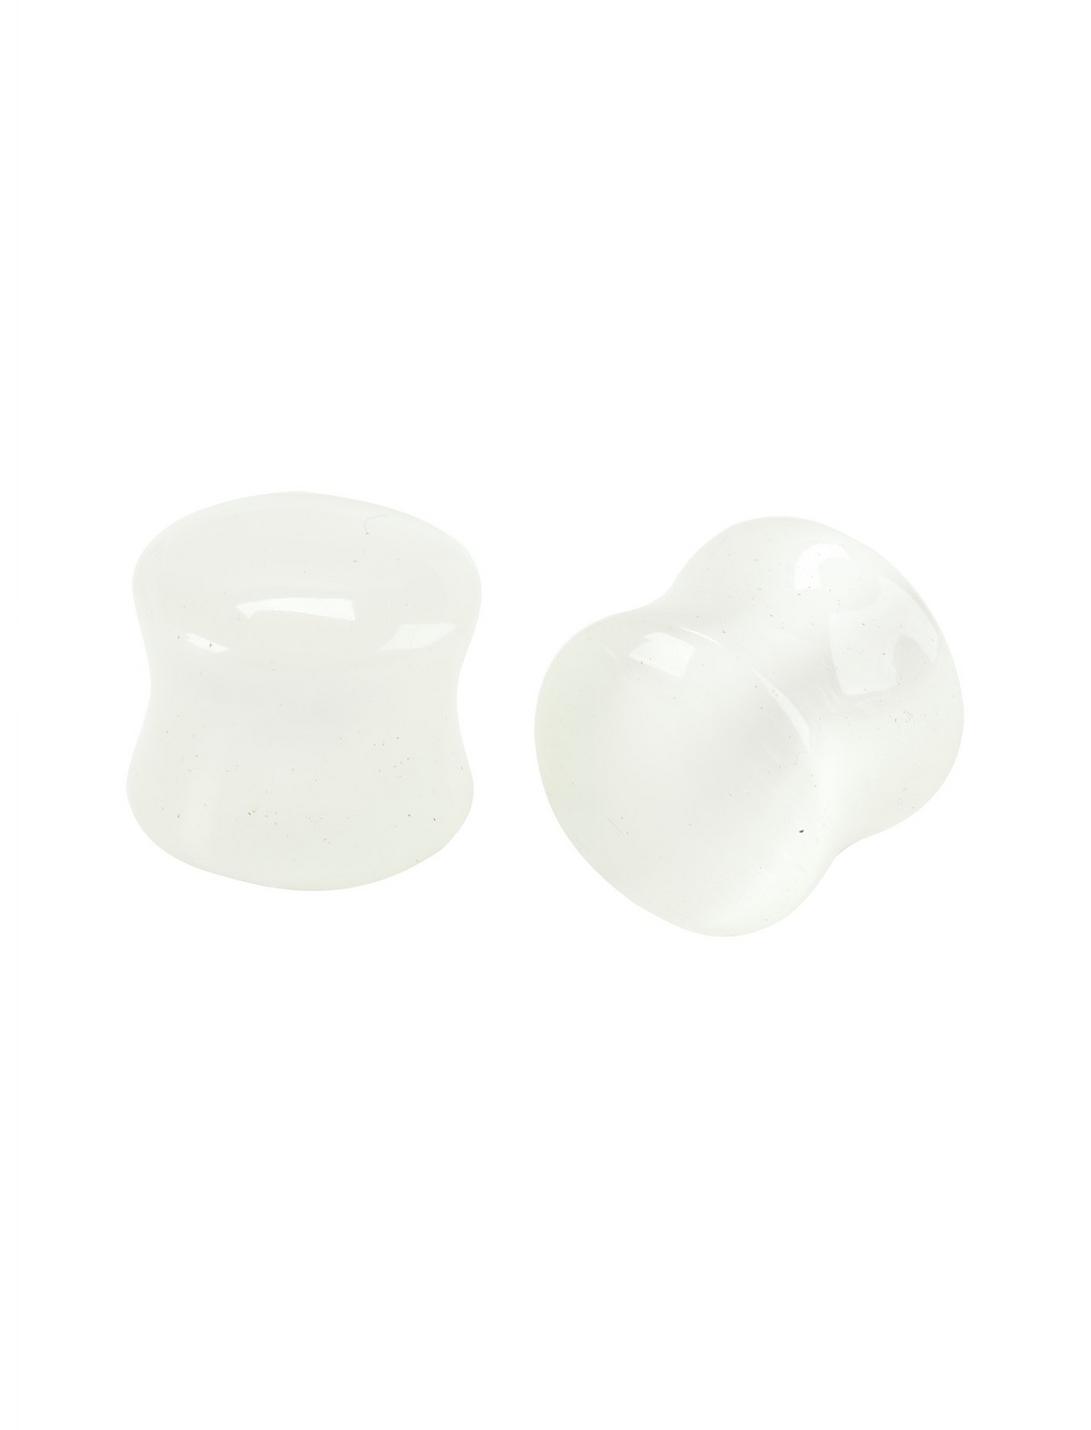 Acrylic White Pearl Saddle Plug 2 Pack, WHITE, hi-res